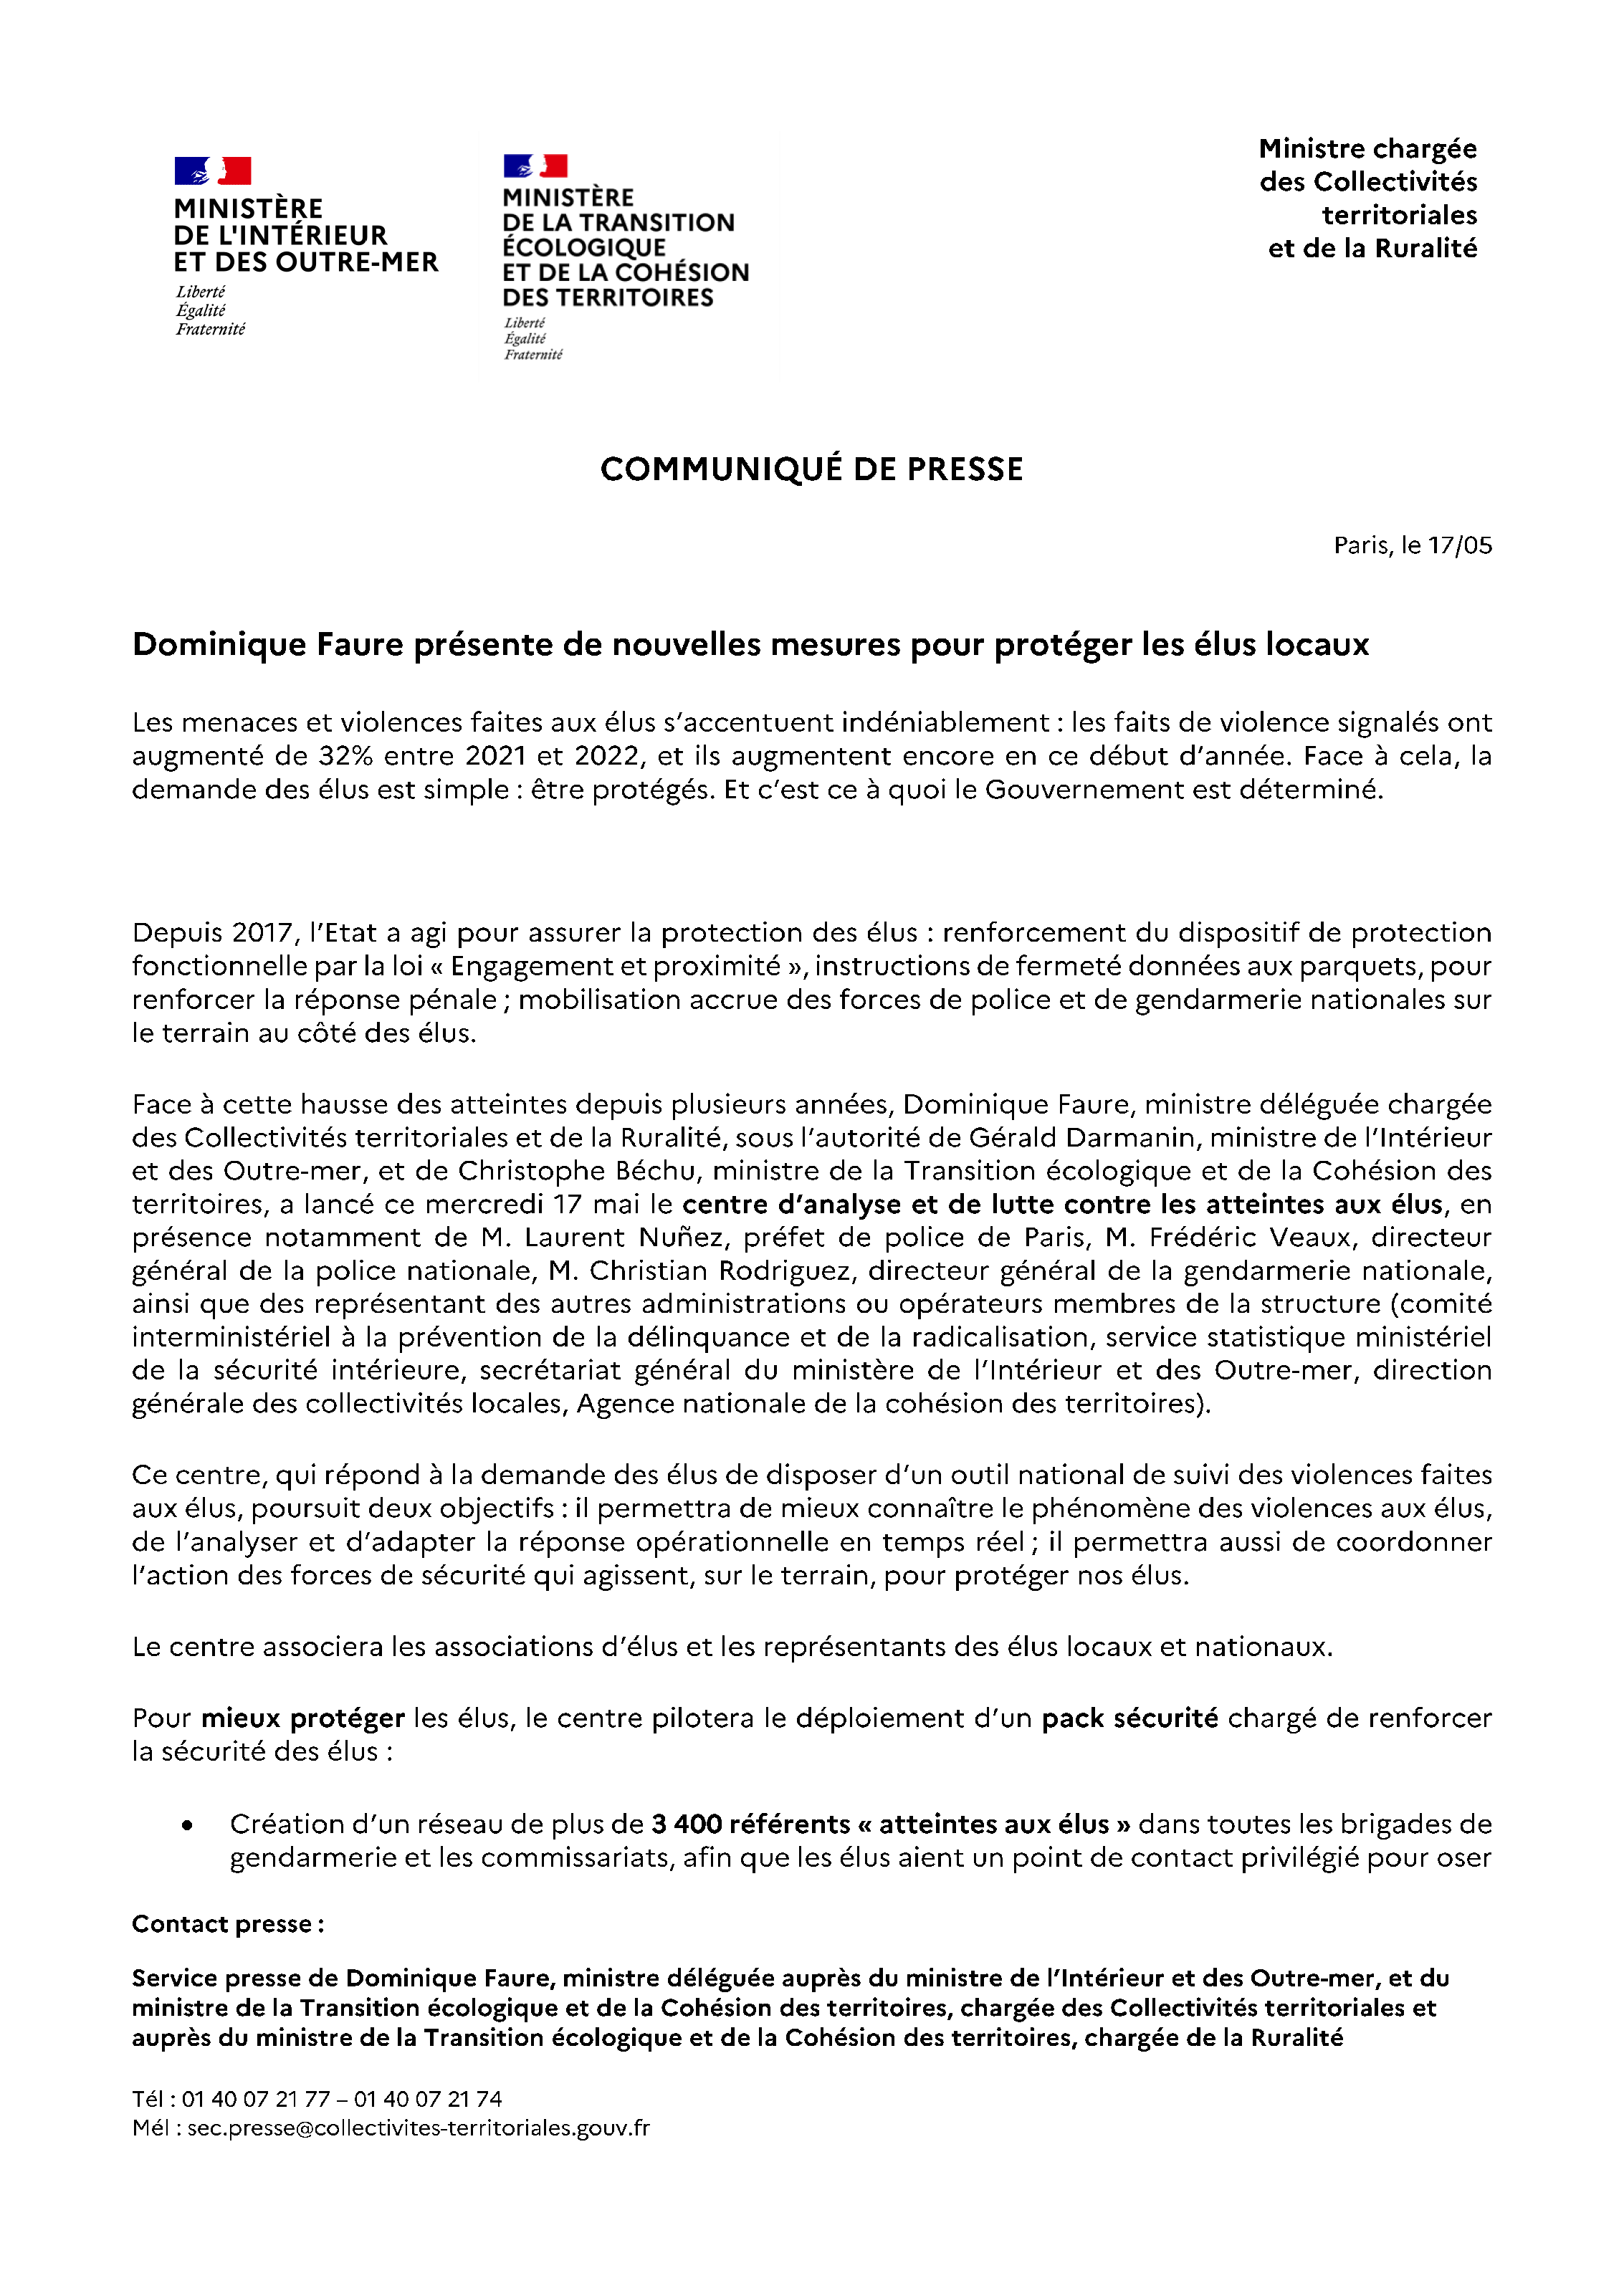 CP Dominique Faure présente de nouvelles mesures pour protéger les élus locaux[1]_Page_1